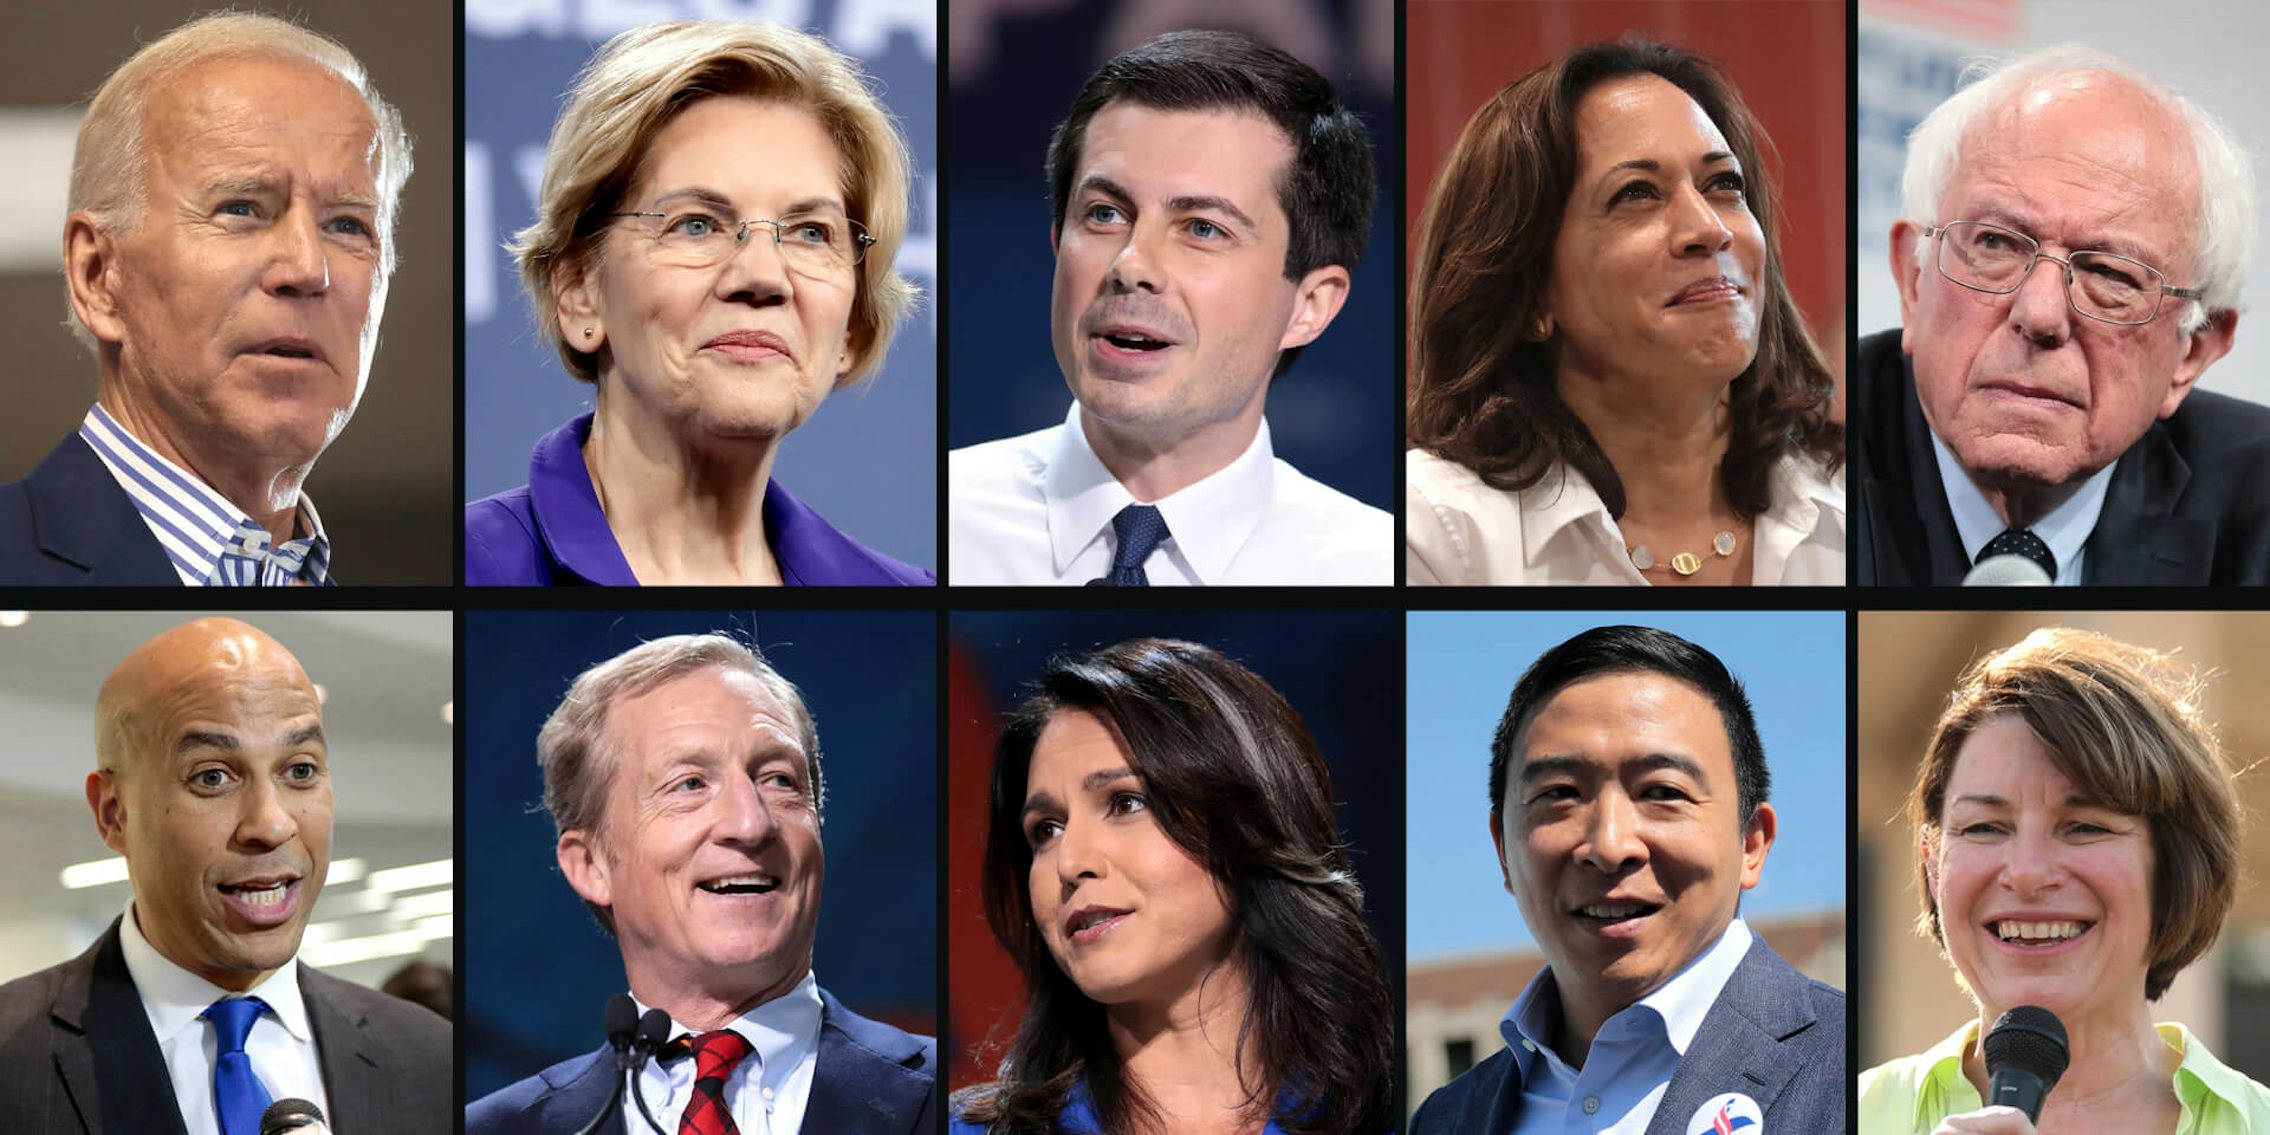 How To Watch Fifth 2020 Democratic Debate